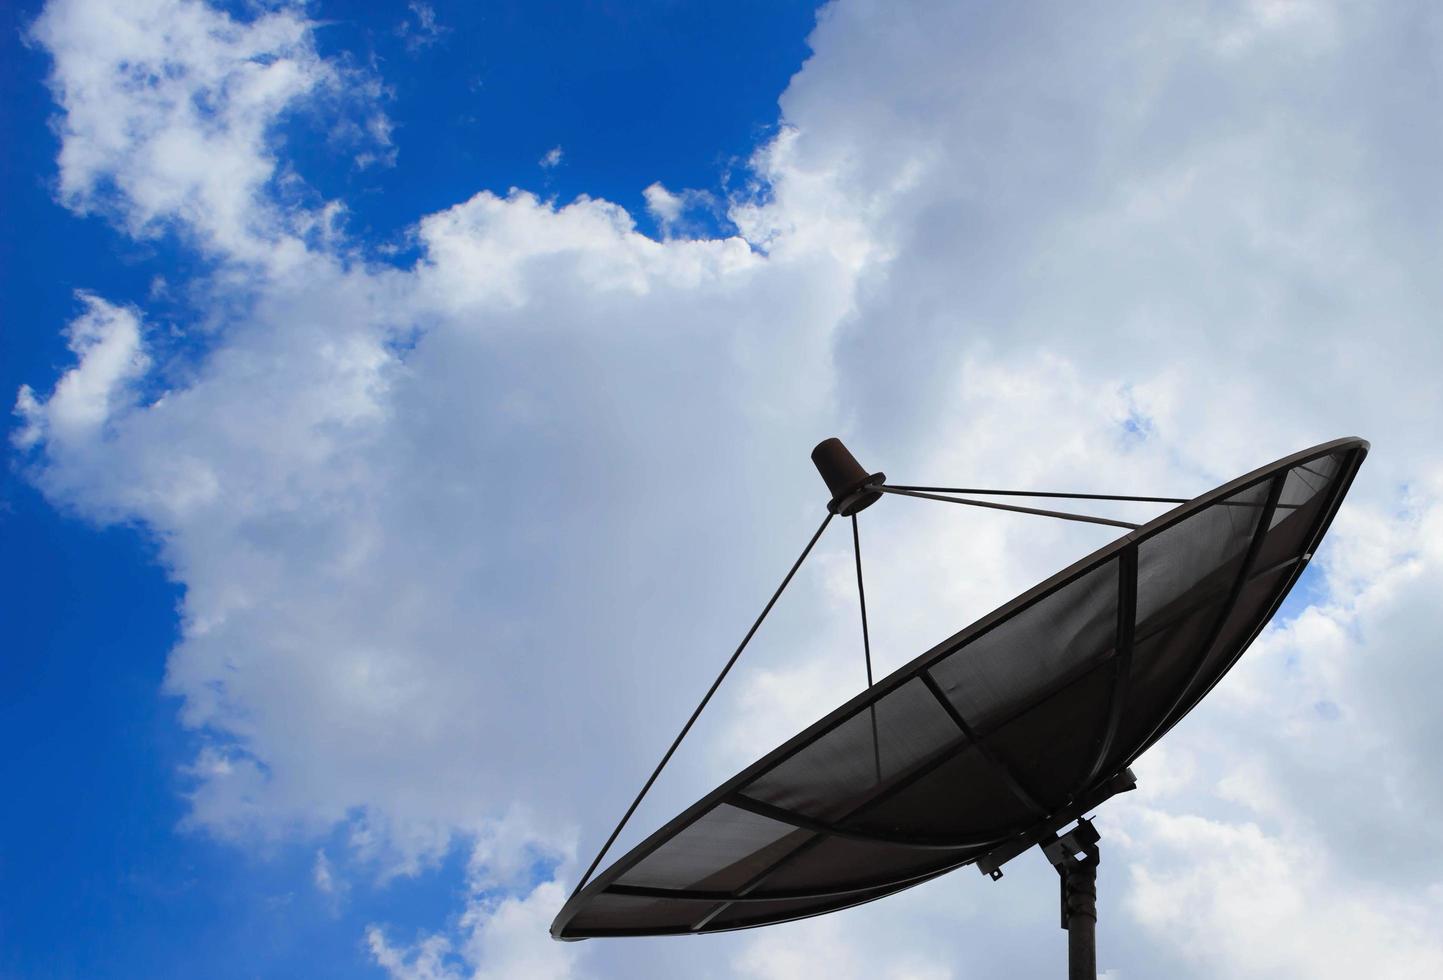 satellitenschüssel auf dem hintergrund von wolken und himmel foto